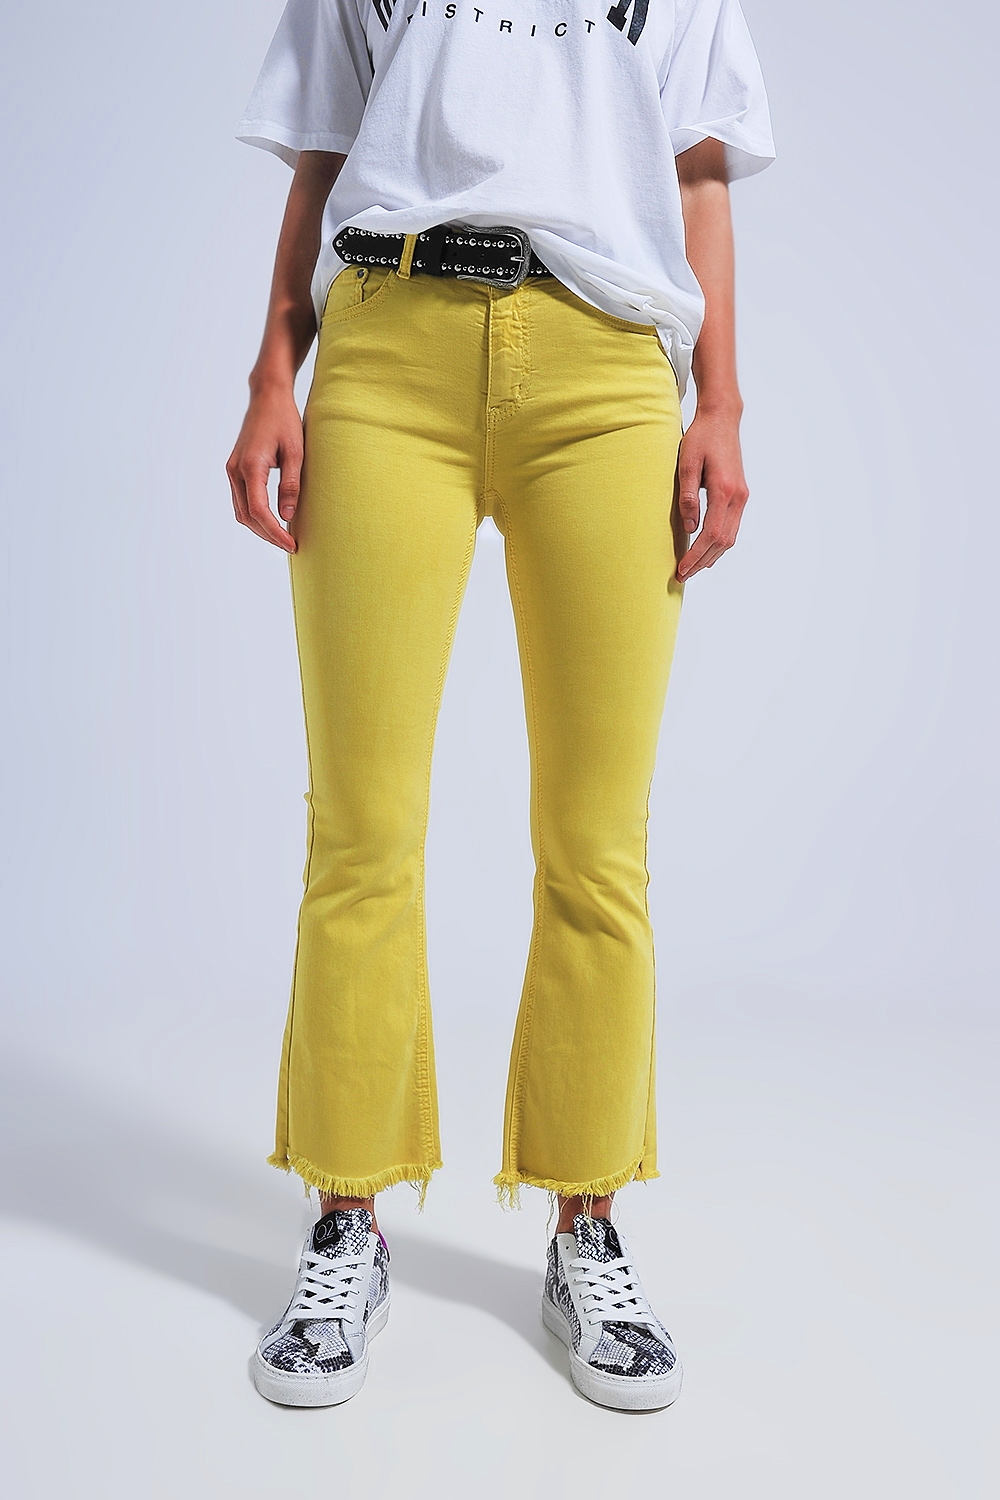 Pantalones rectos en amarillo con tobillos anchos